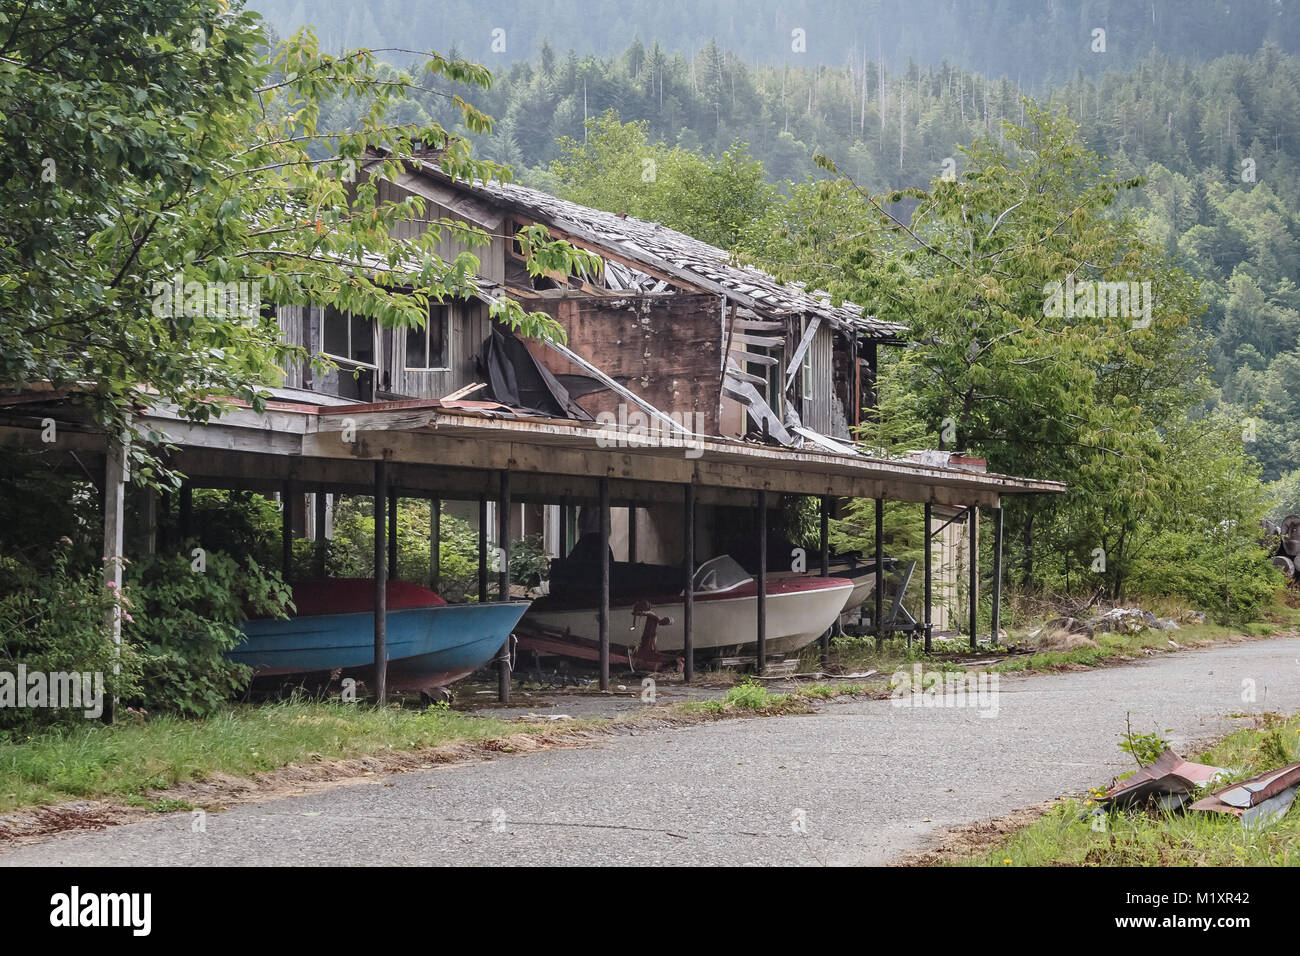 Mit Obstbäumen daneben und Boote und Trailer noch in den Carport, ein verlassenes Haus steht in Ruinen in der Geisterstadt Ozean fällt, BC. Stockfoto